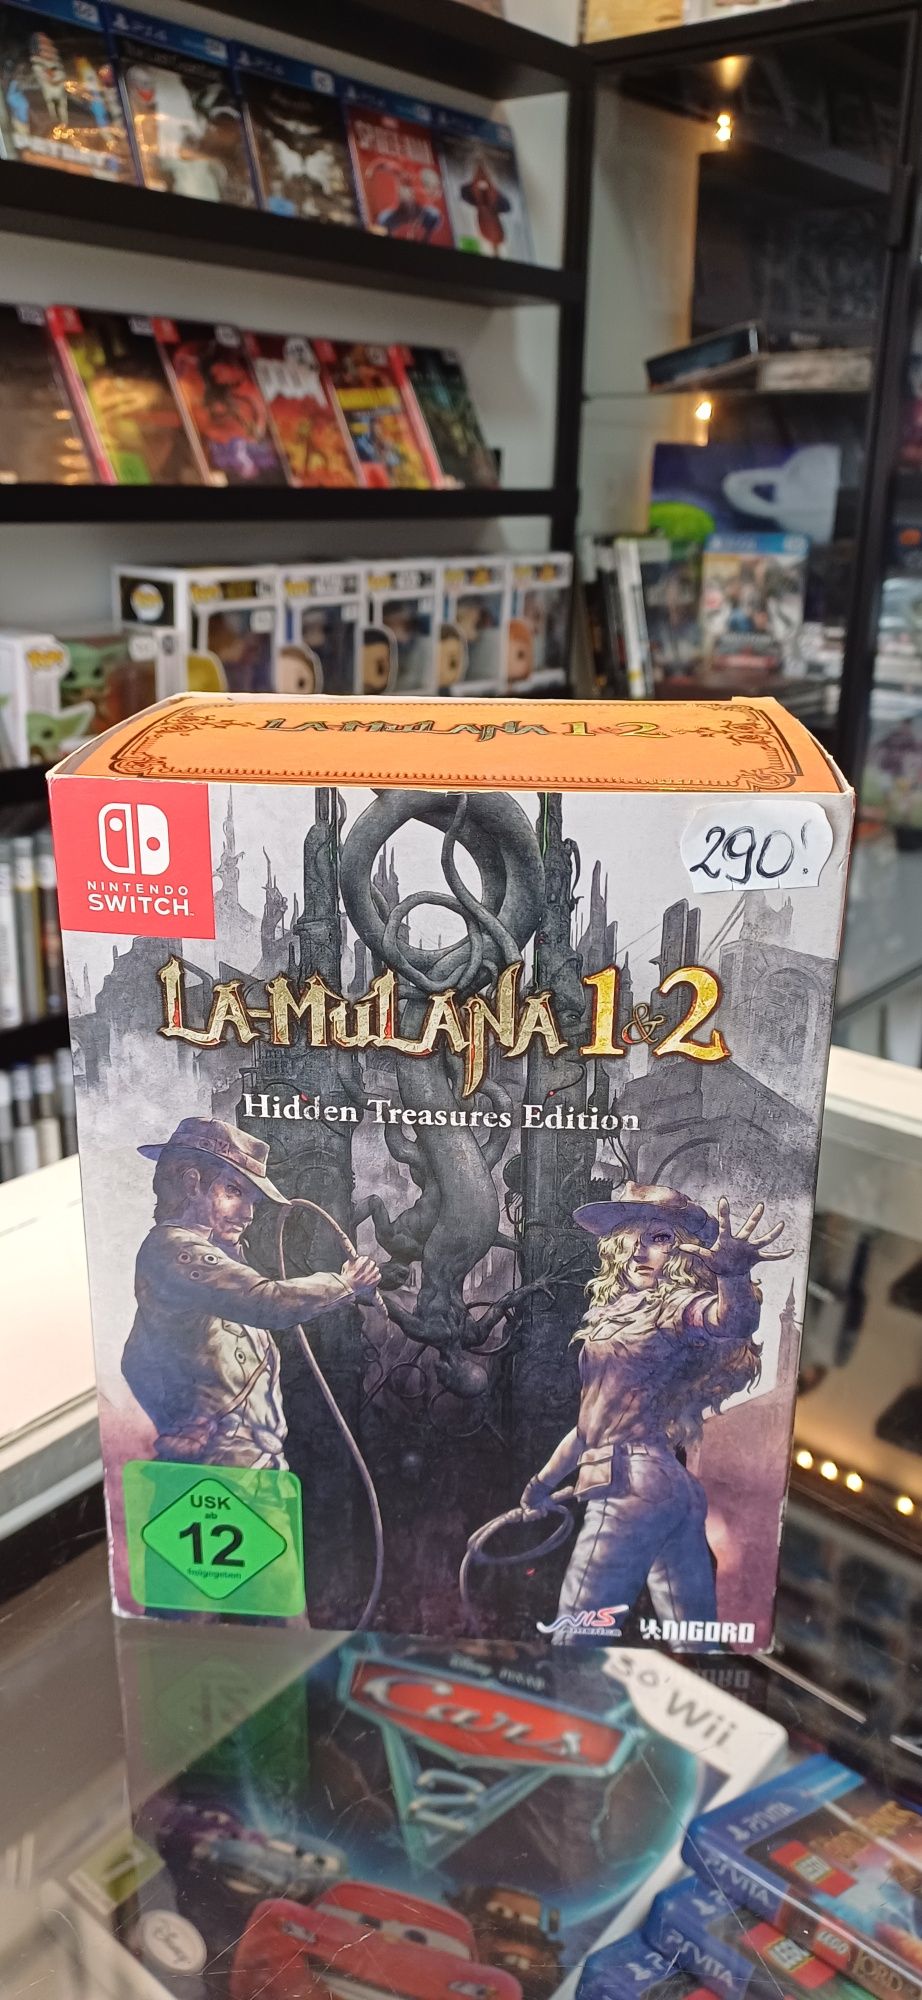 La-Mulana 1-2 Hidden Treasures Edition - Nintendo Switch